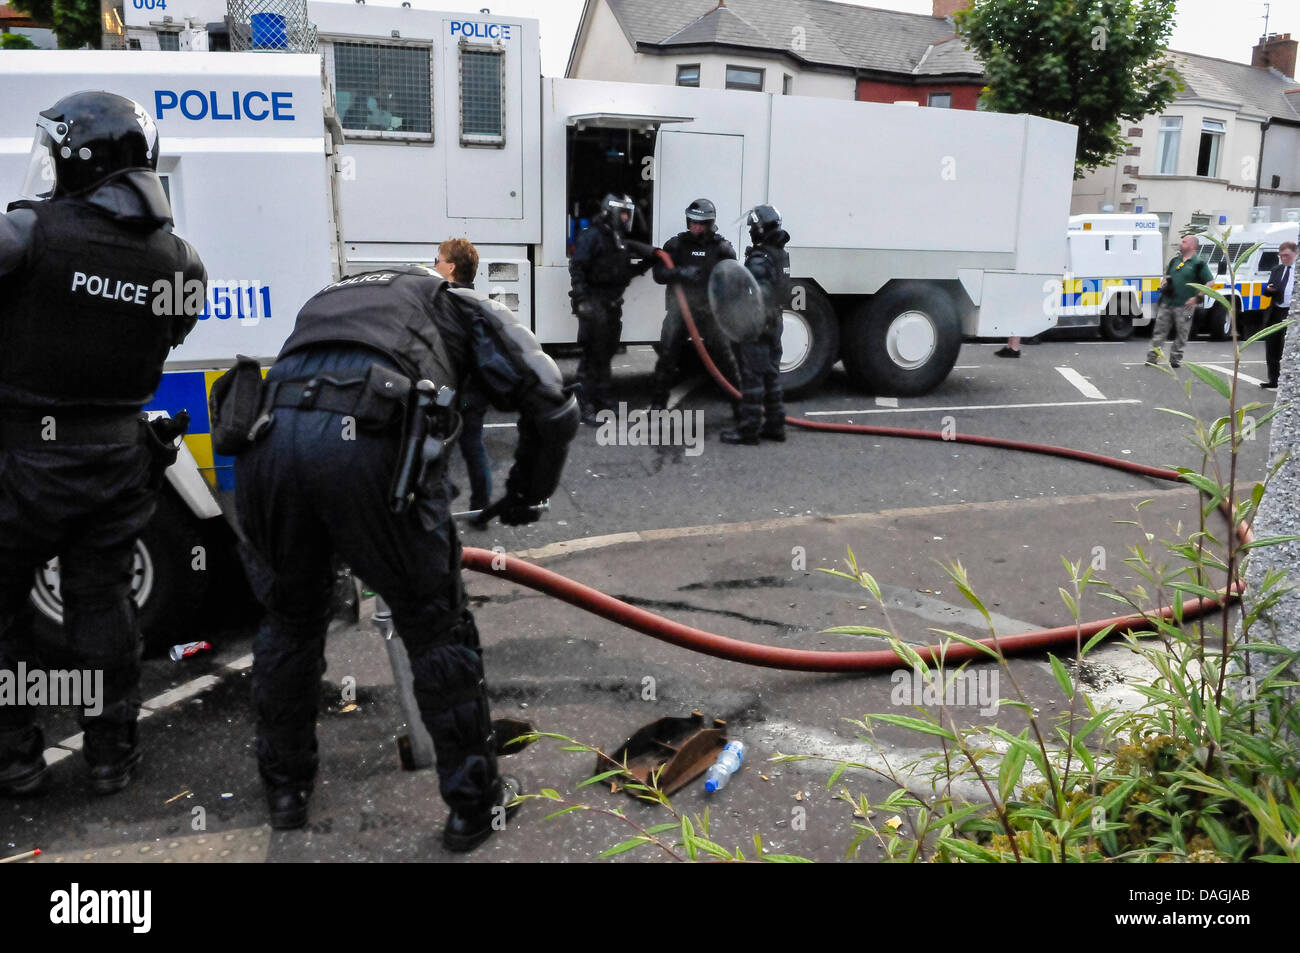 Belfast, Nordirland, 12. Juli 2013 - PSNI Polizei Offiziere füllen eine Wasserkanone mit einem Wasser-Hydranten und Schlauch während eines Aufstandes Credit: Stephen Barnes/Alamy Live News Stockfoto